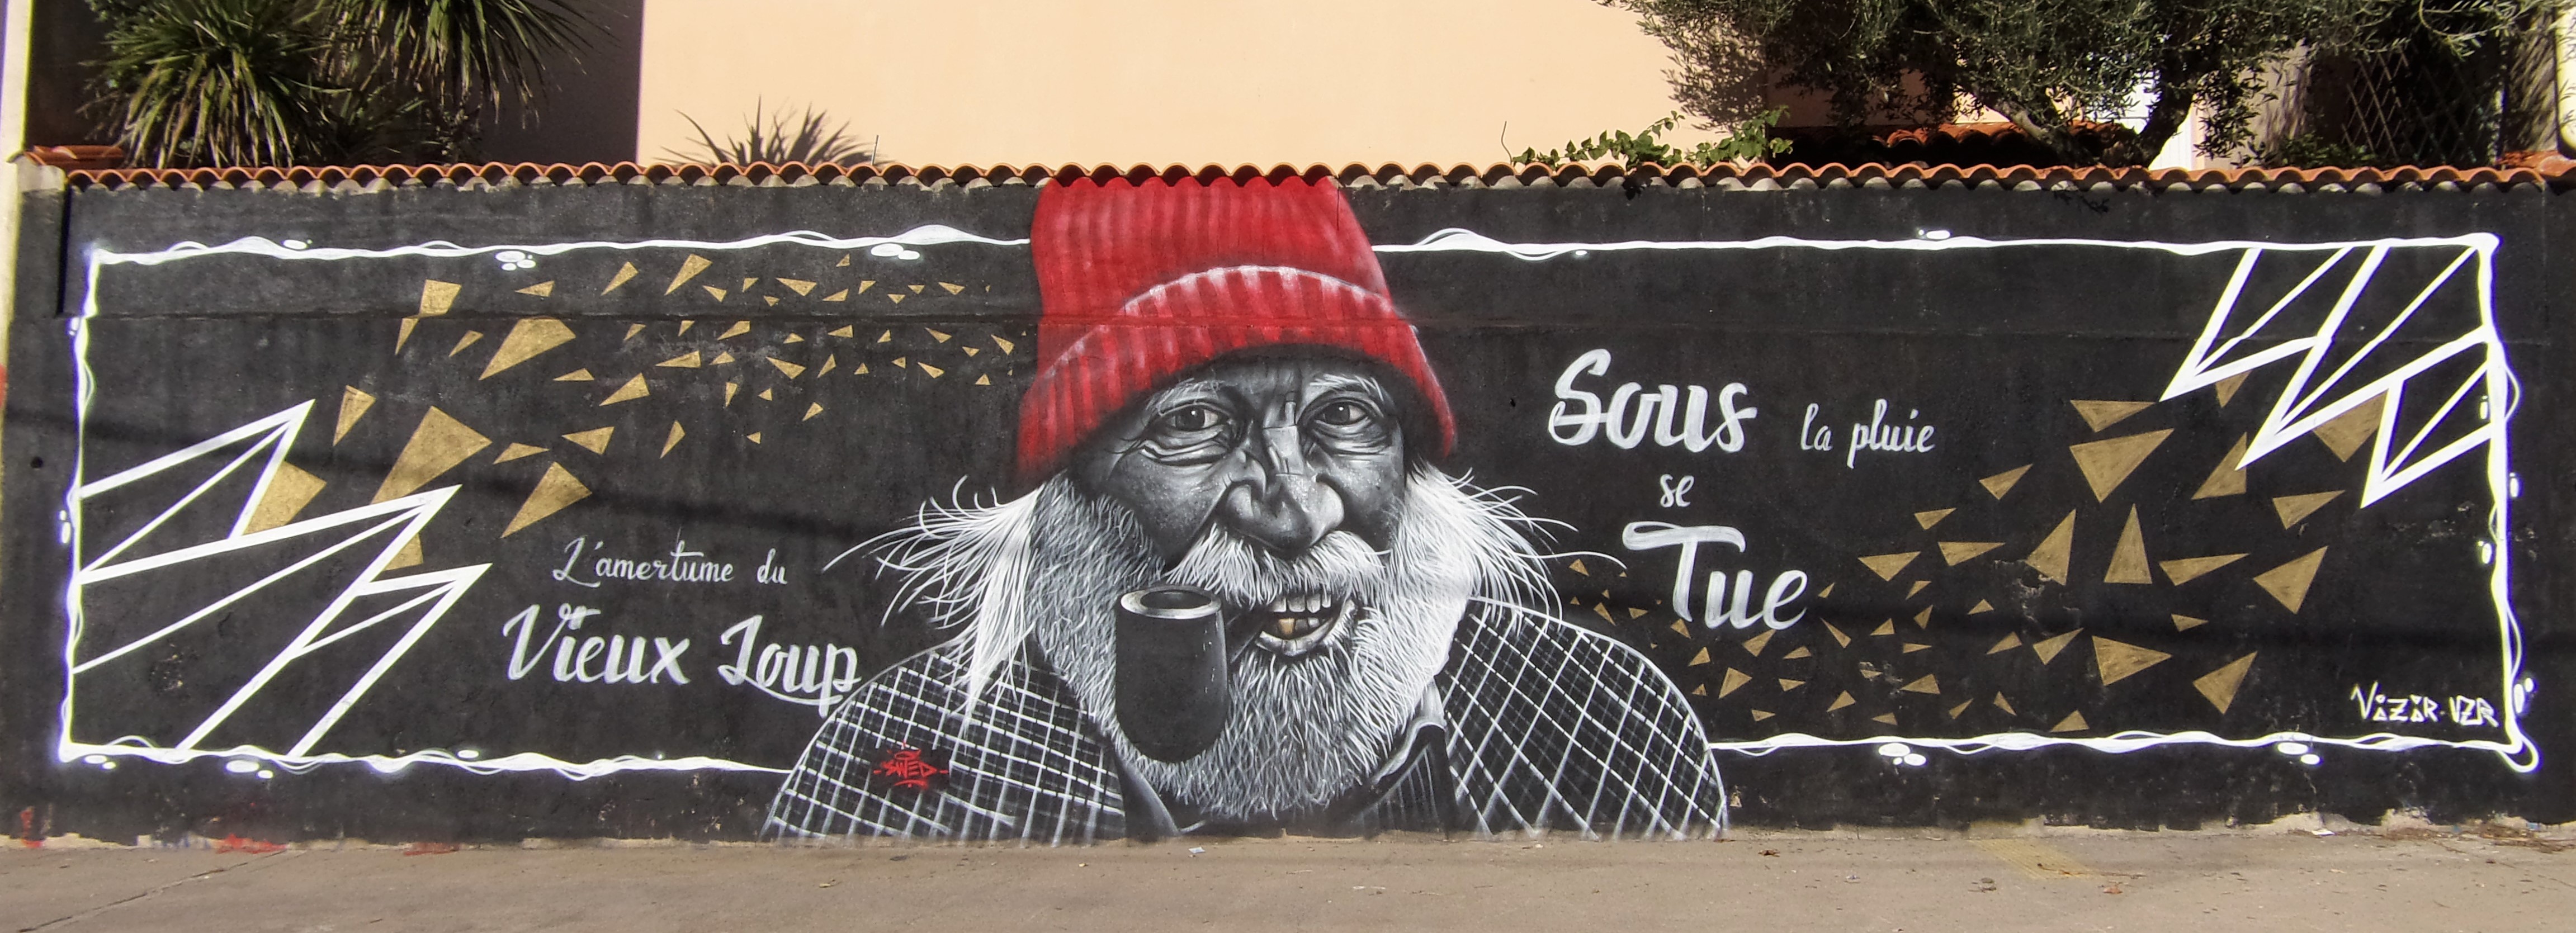 Graffiti 6920  de SWED ONER capturé par Mephisroth à Sète France